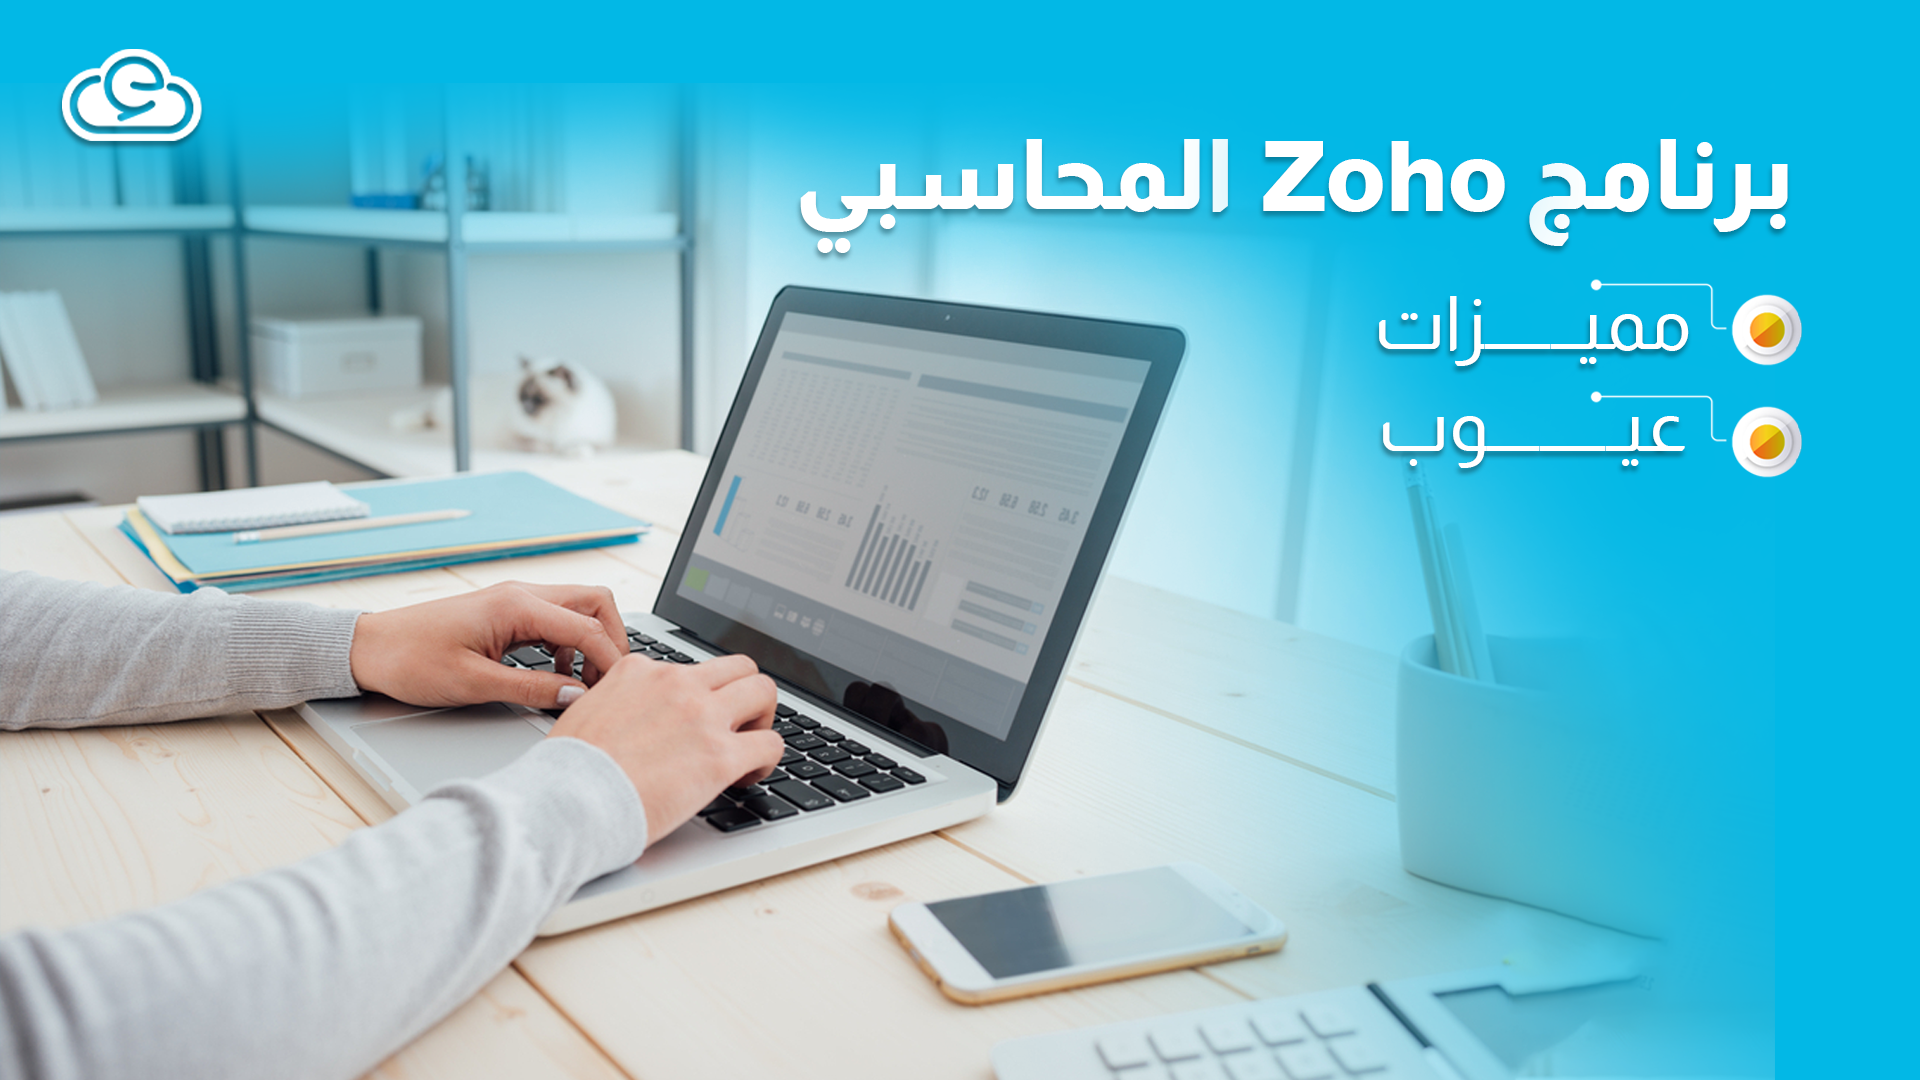 مميزات وعيوب برنامج Zoho المحاسبي